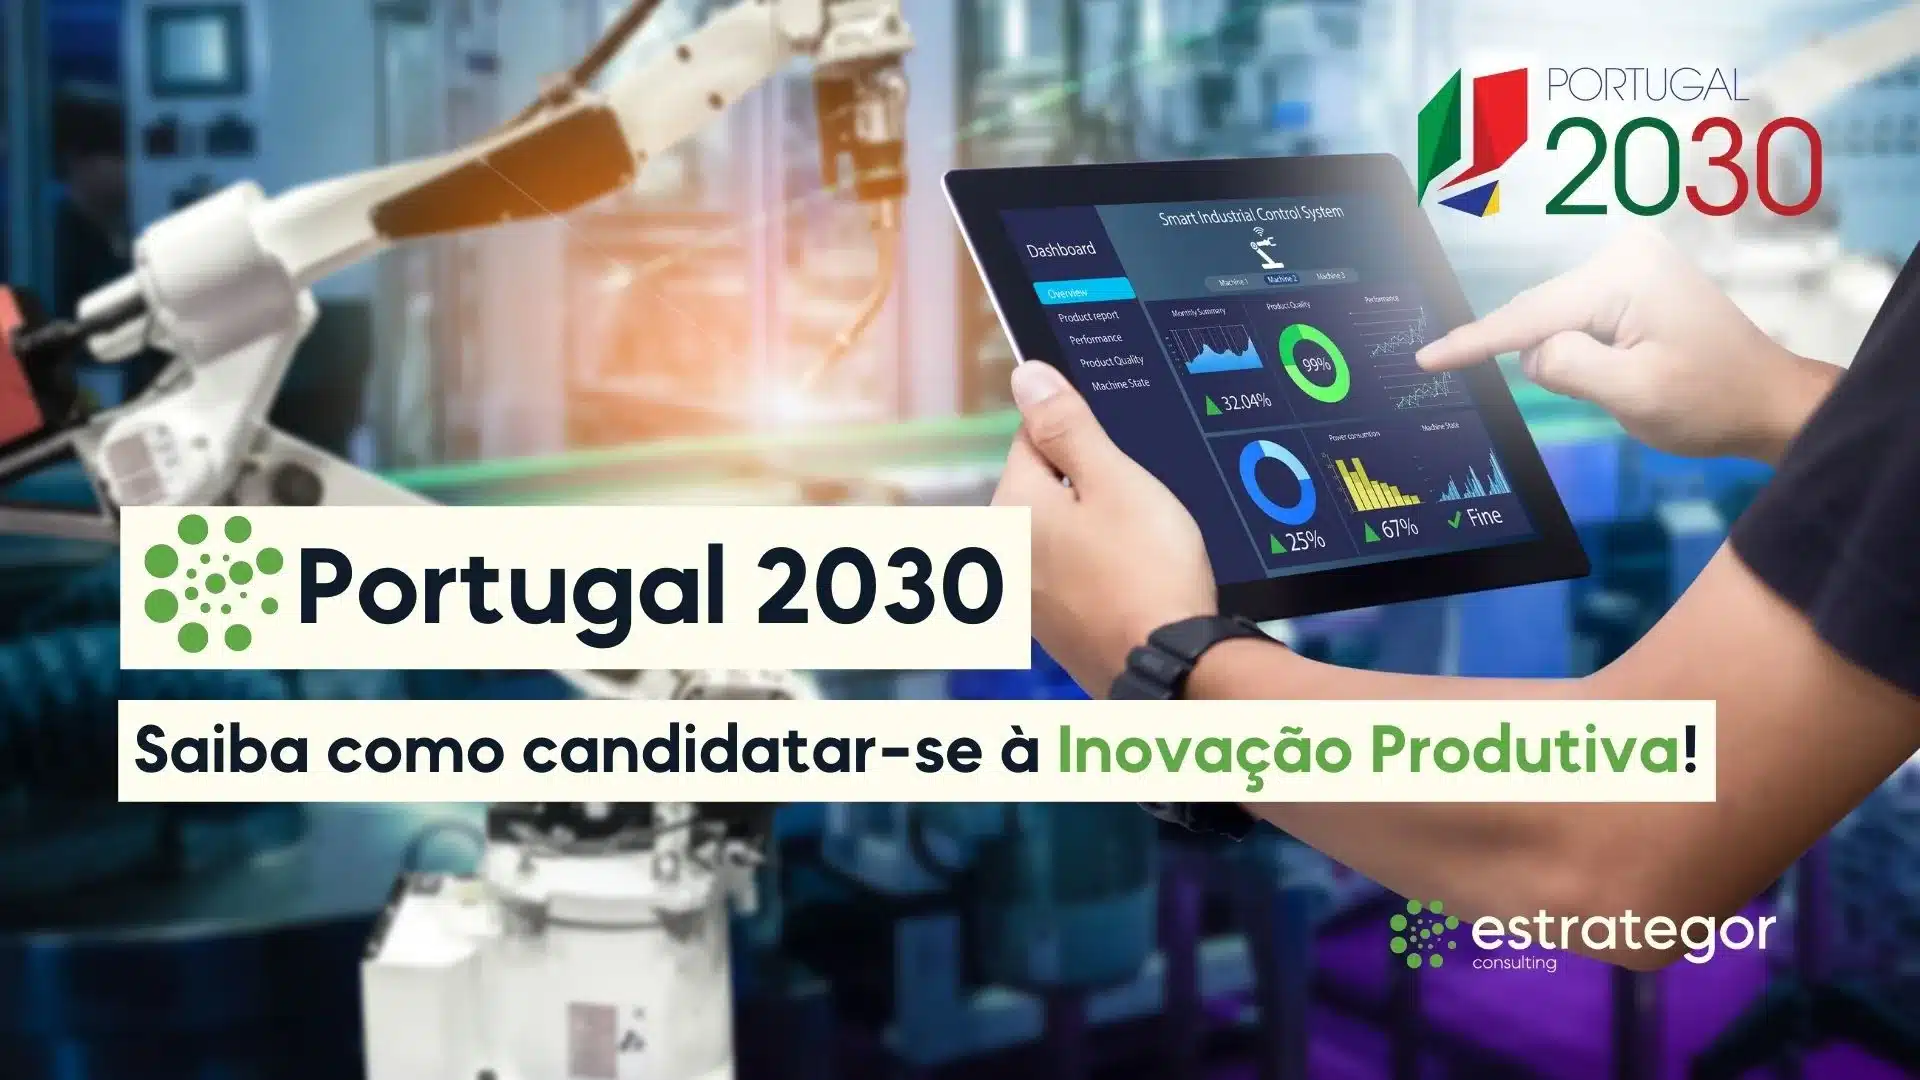 portugal 2030 saiba como candidatar-se inovacao produtiva